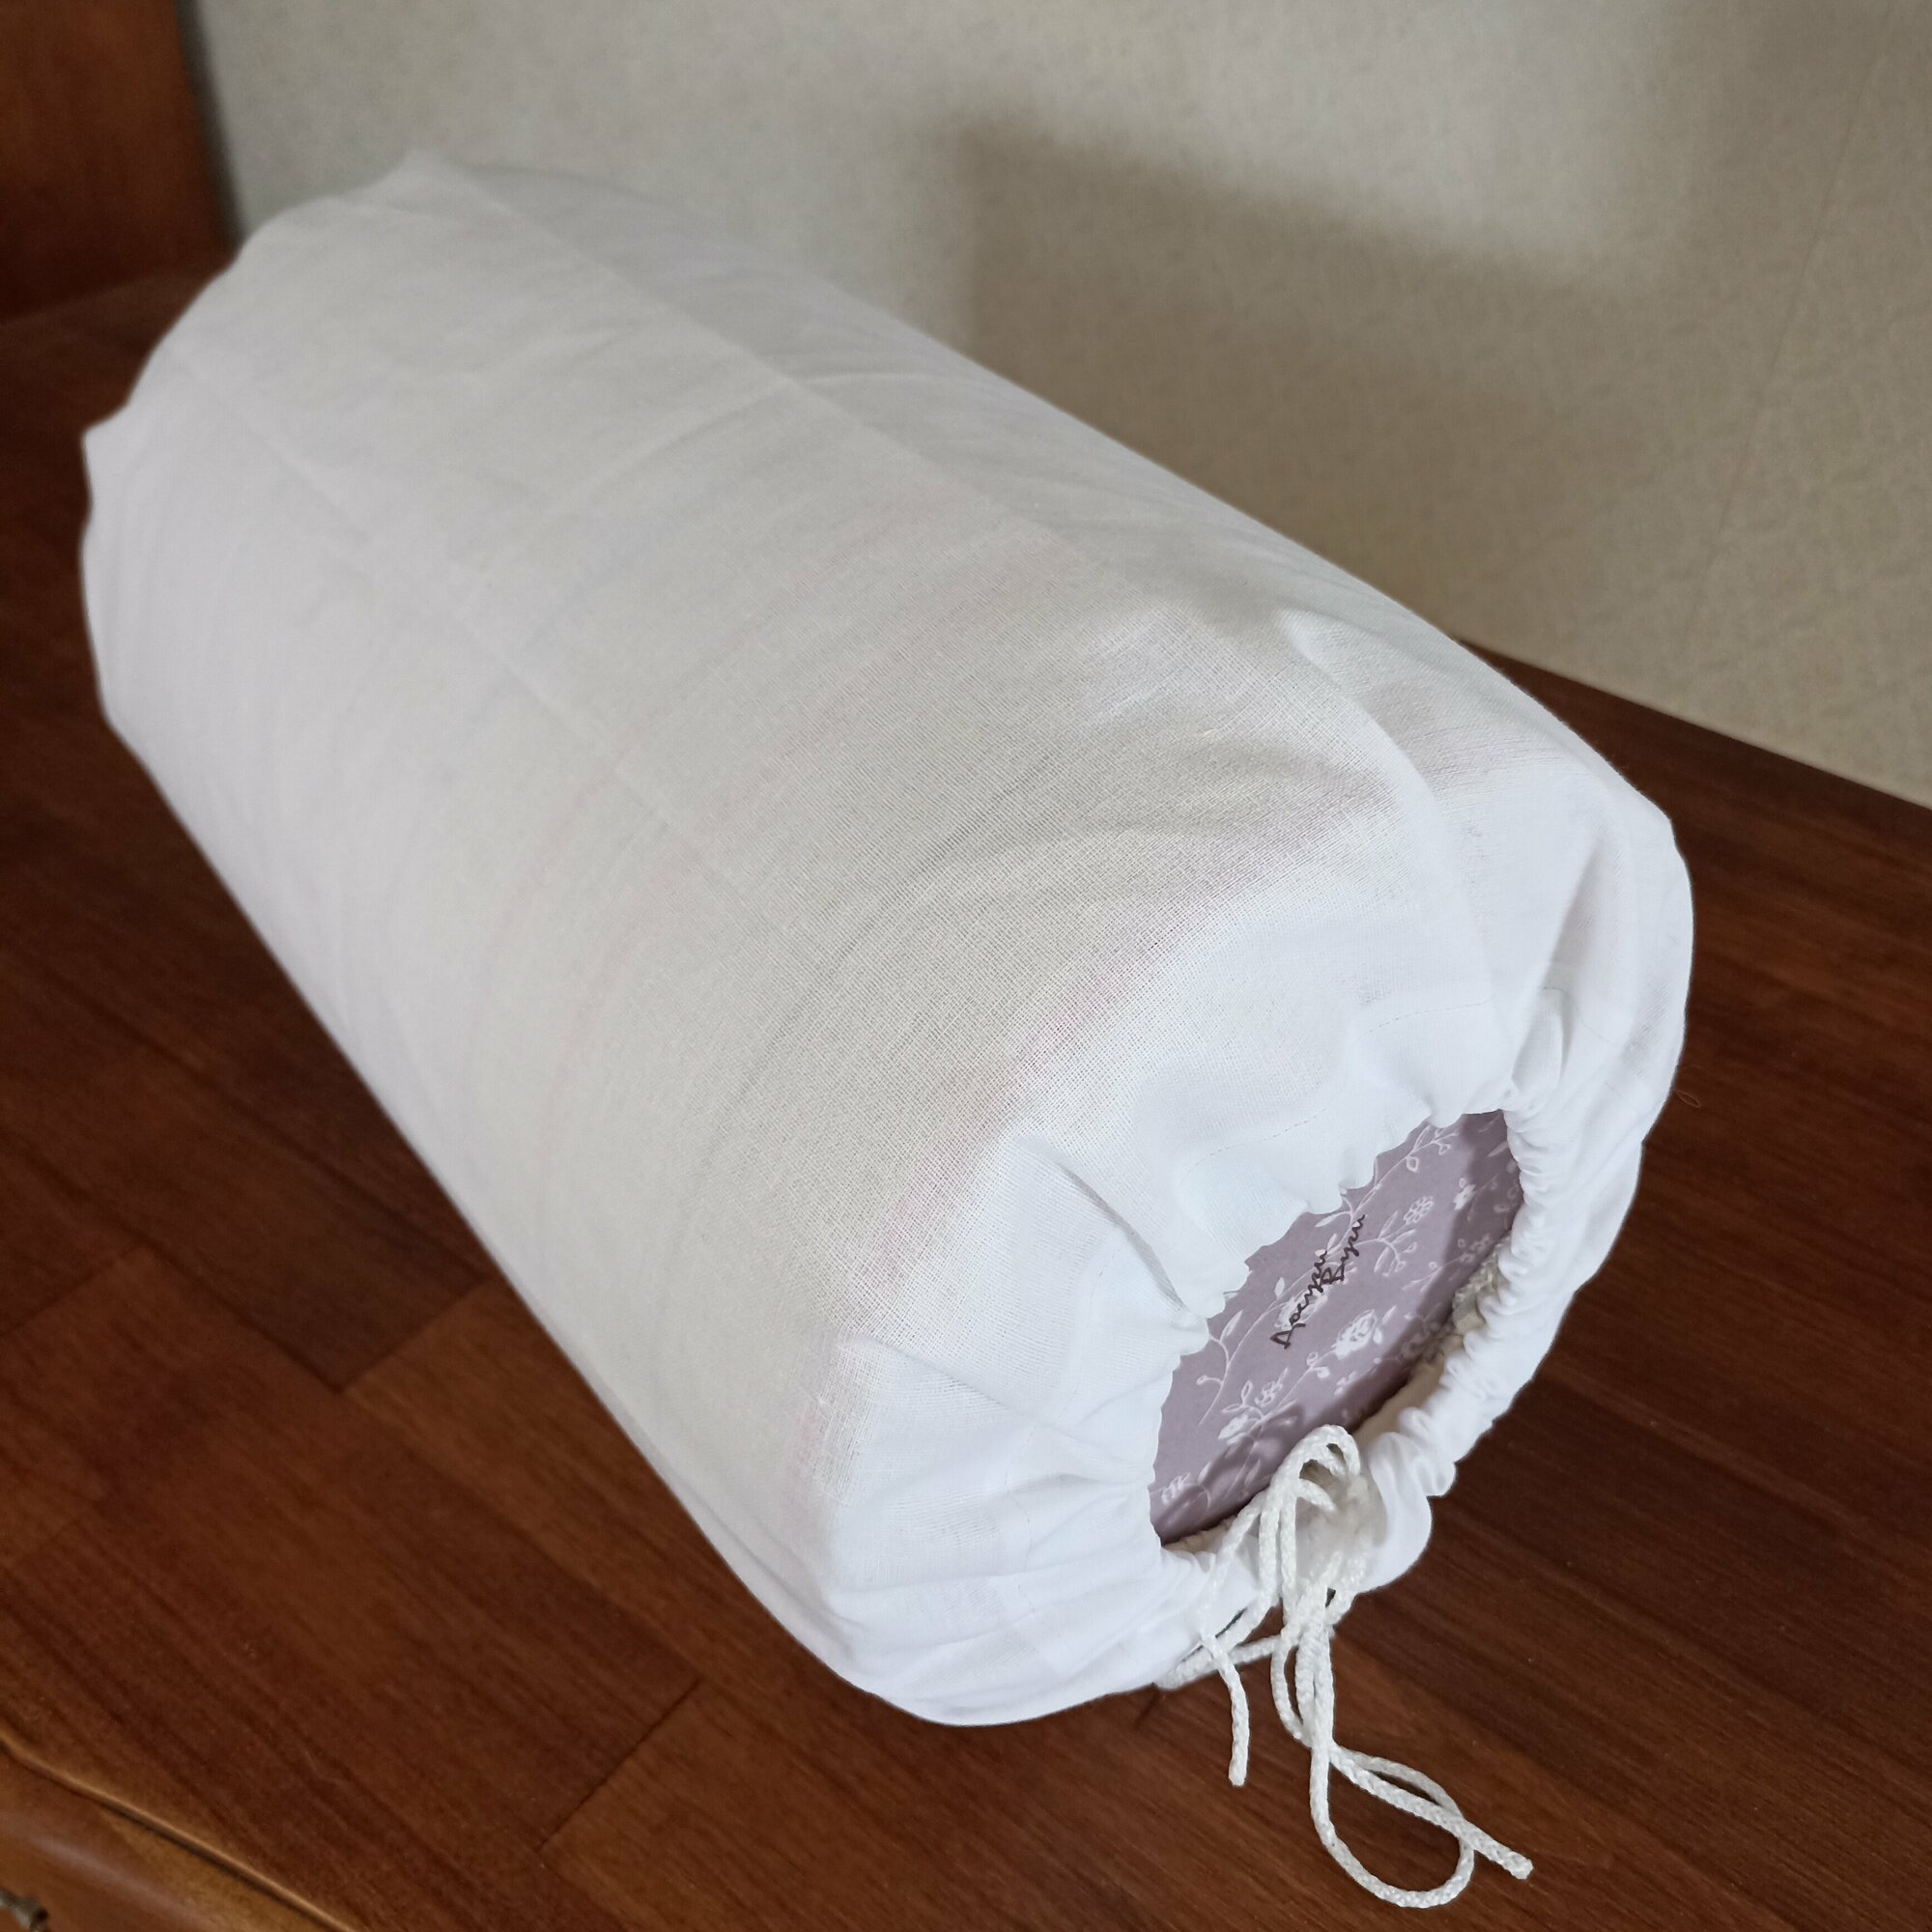 Чехол на подушку для кружевоплетения 24х37 см, из светлой ткани производство Досугивуги.